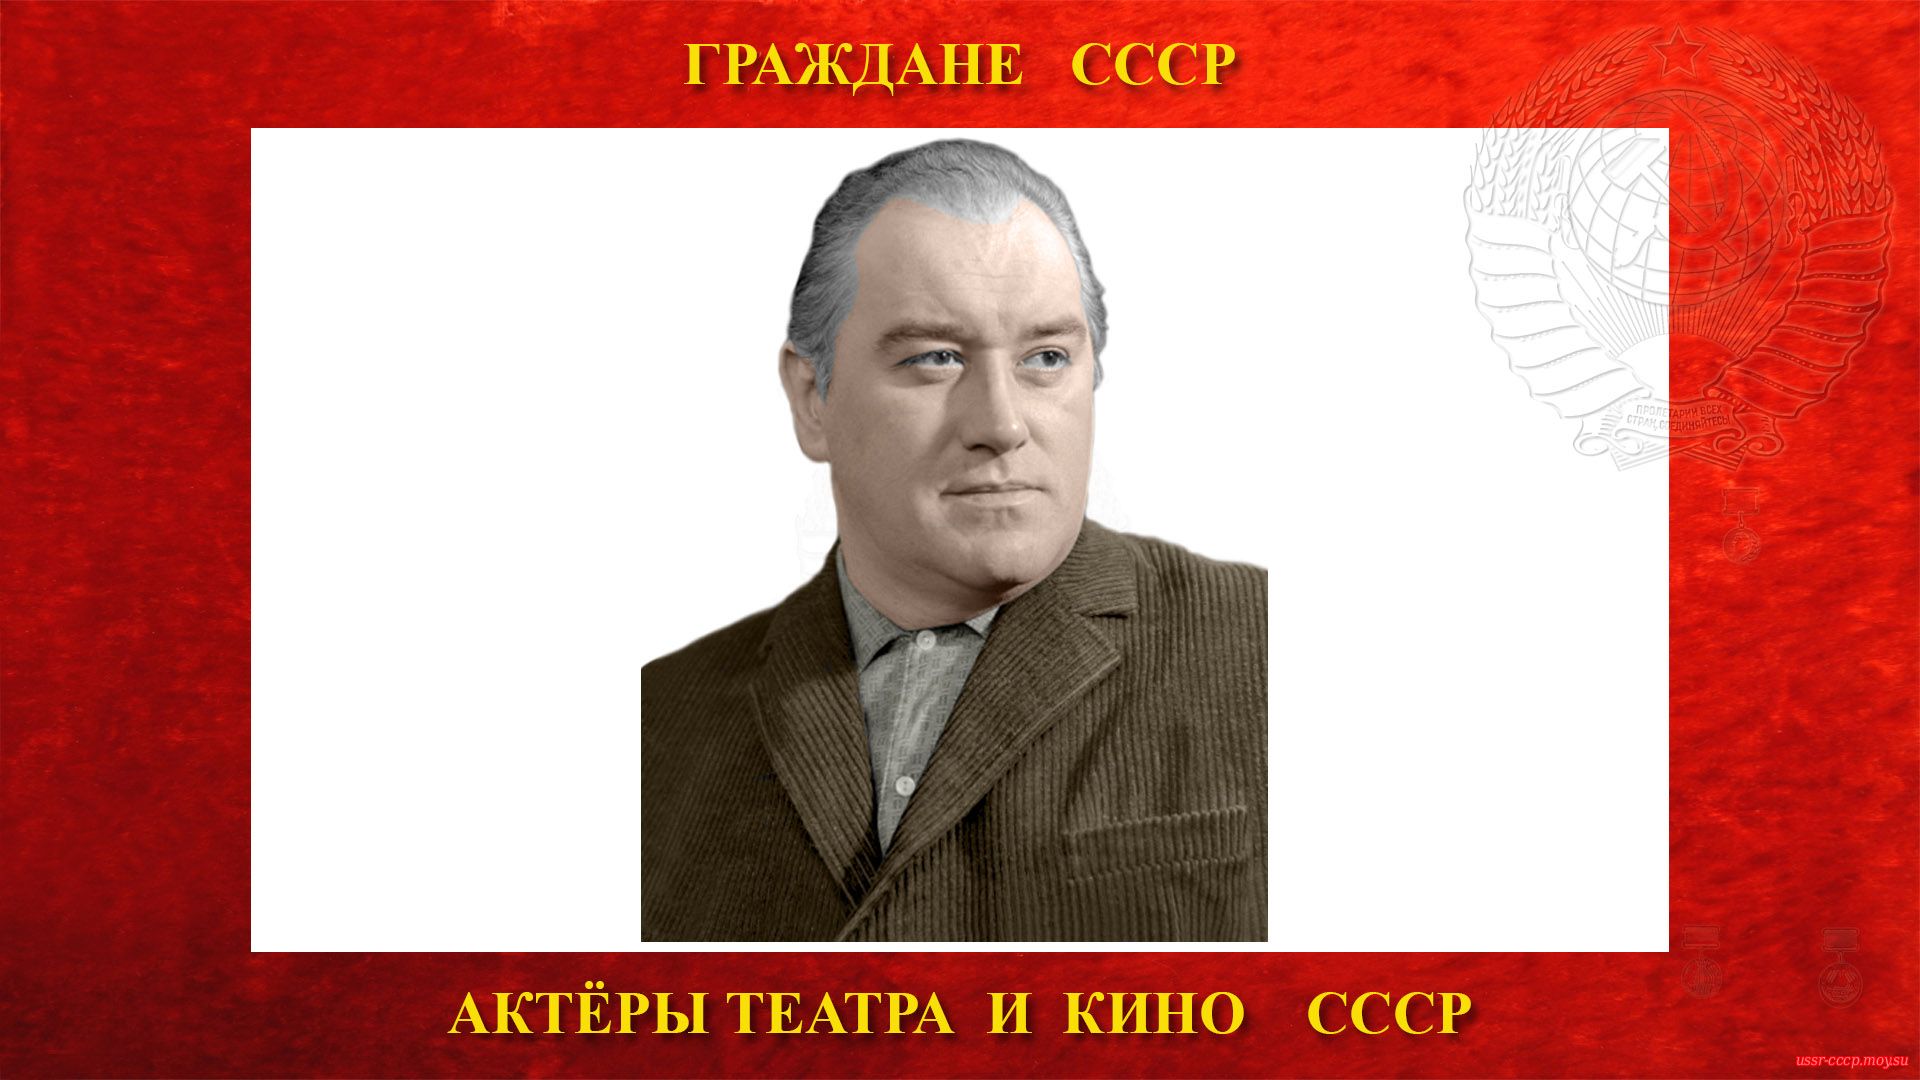 Абрикосов Григорий Андреевич — Советский актёр театра и кино